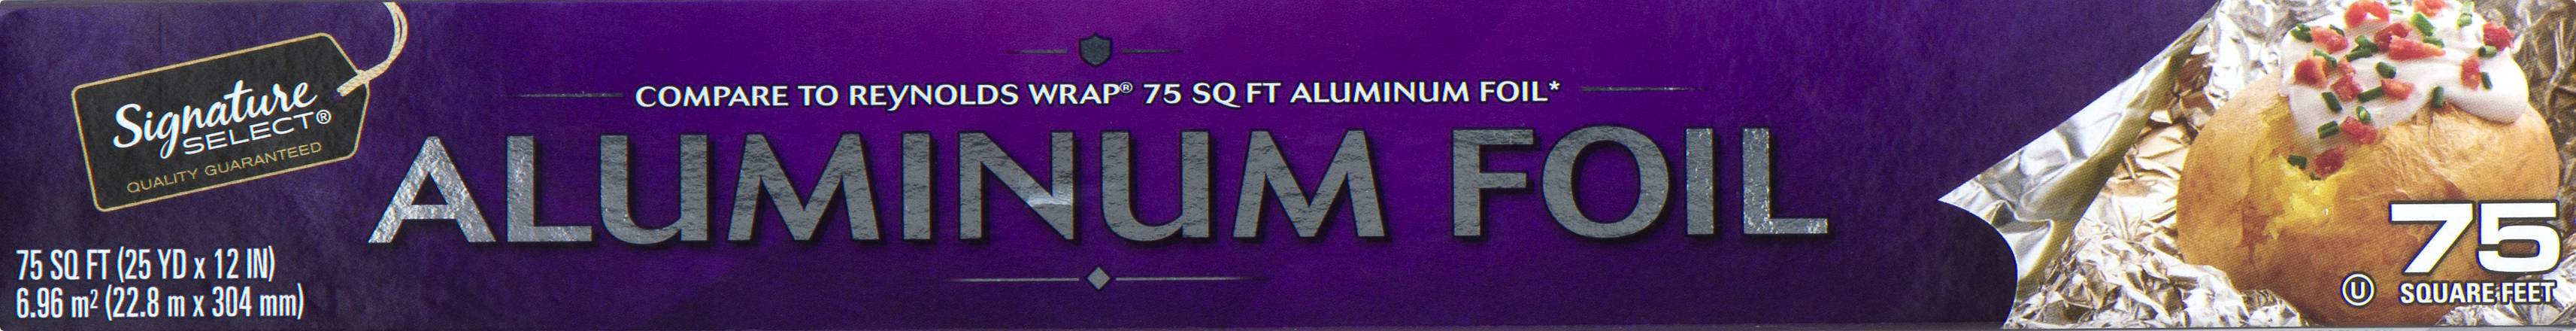 Signature Select 75 Sq ft Aluminum Foil (1 roll)